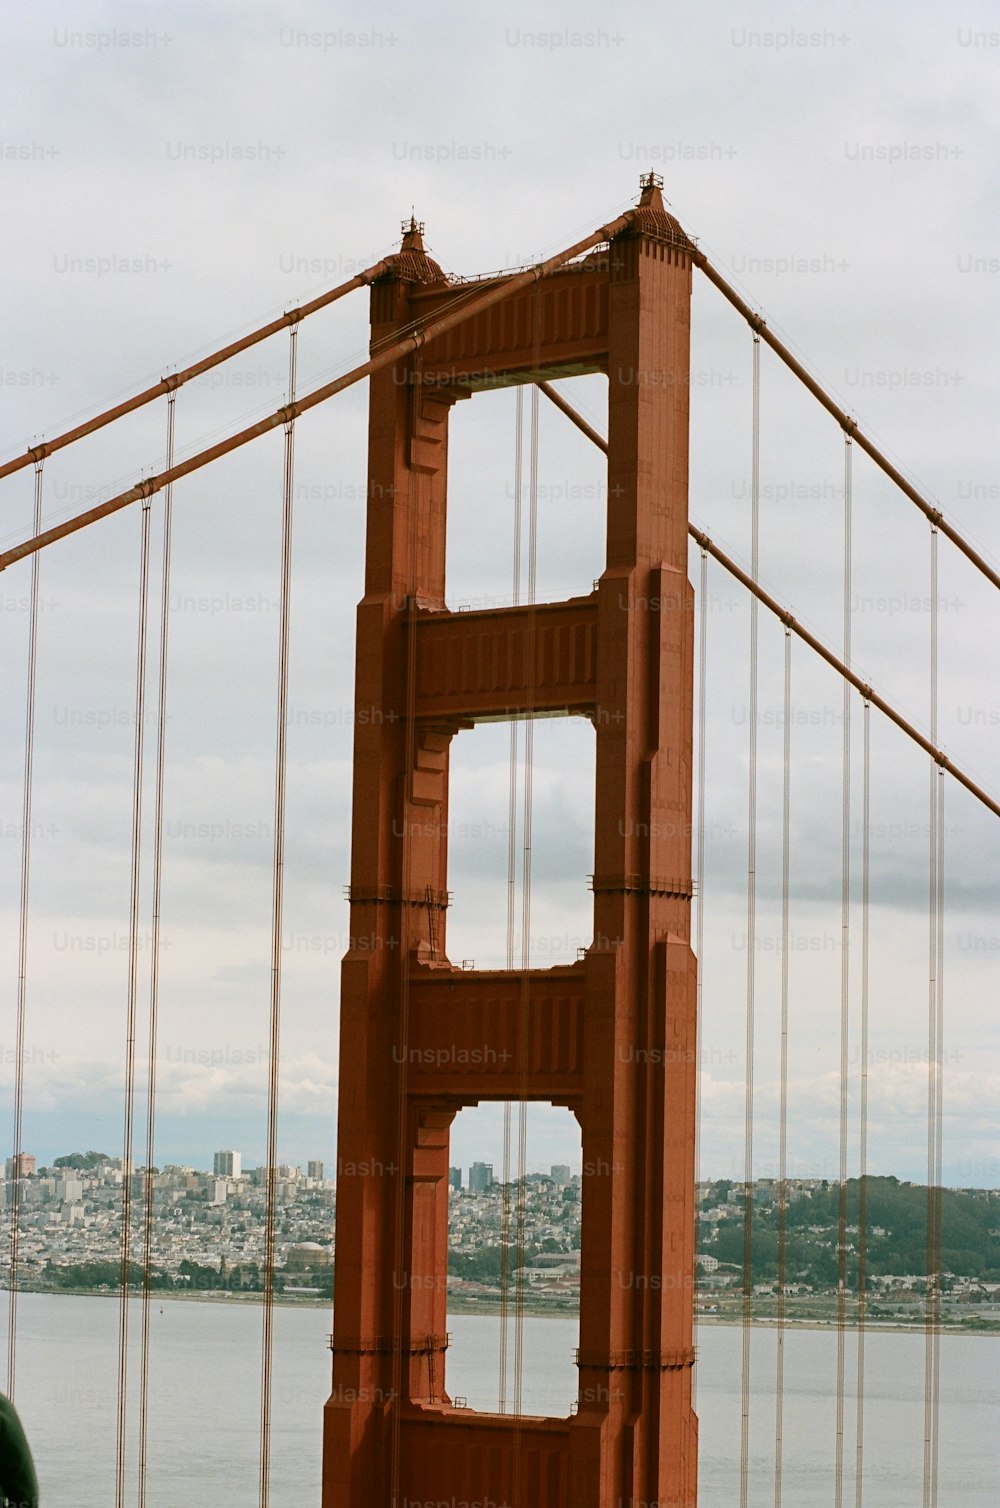 Una vista del Golden Gate Bridge dall'altra parte dell'acqua